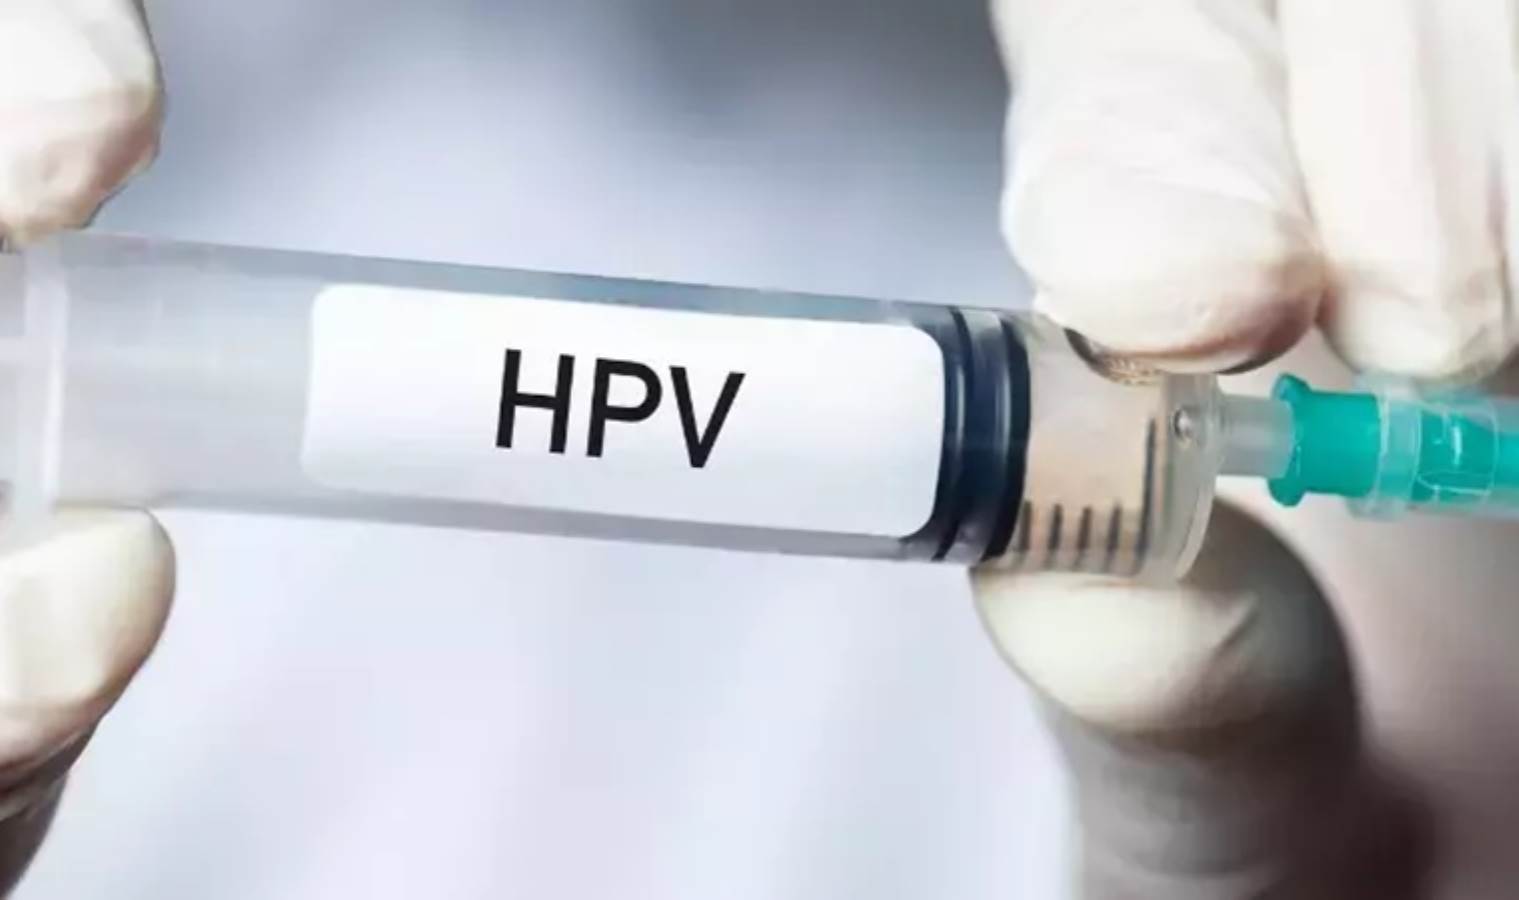 HPV aşısı, kişiyi HPV virüsünün neden olduğu hastalıklardan korur